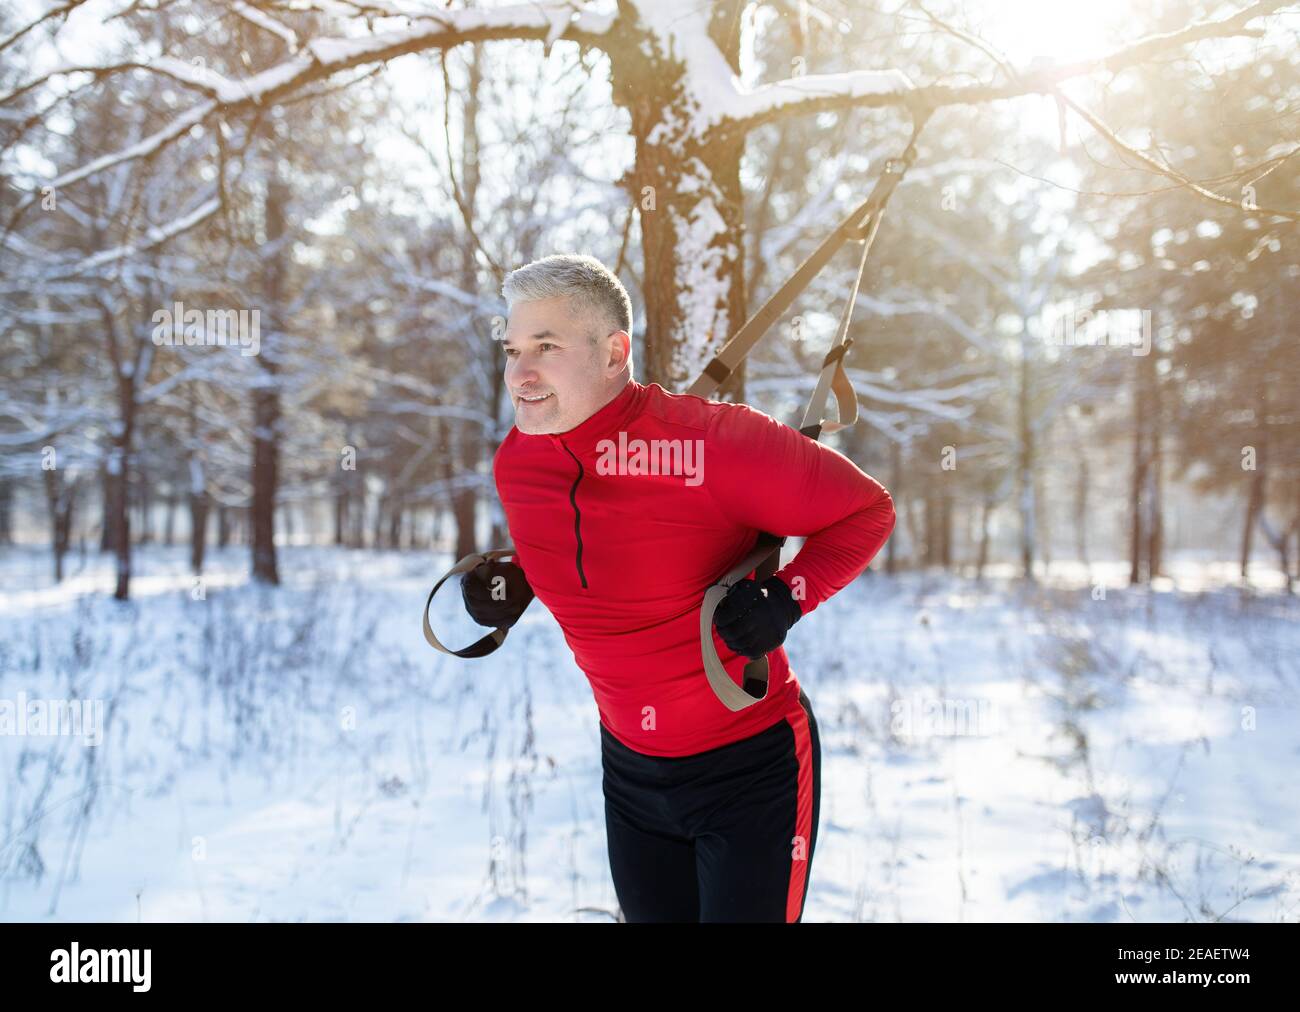 Funktionstraining. Porträt eines älteren Mannes, der im Winter mit Fitnessbändern im verschneiten Park Übungen macht Stockfoto